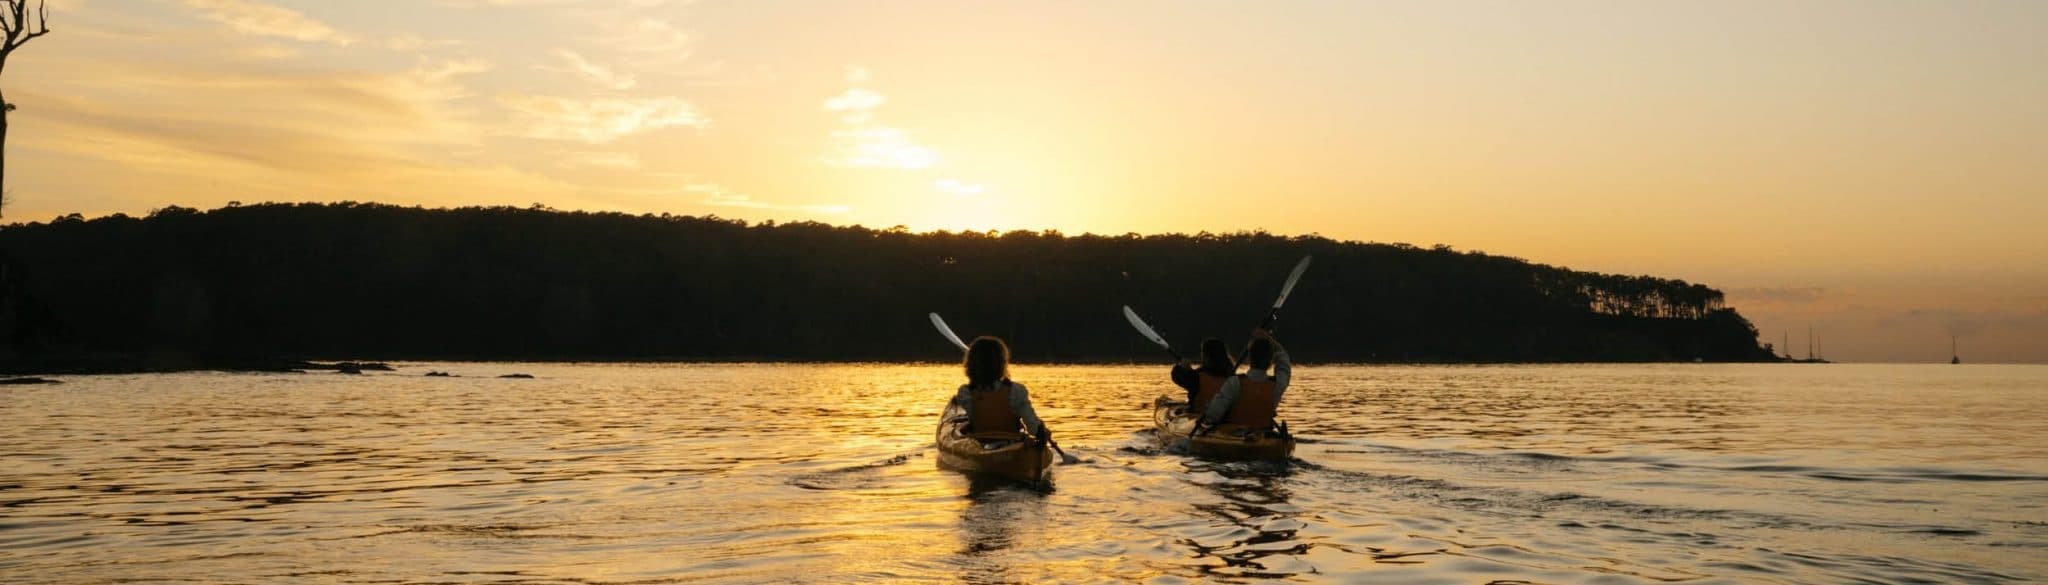 Kayak hire at sunset in Batemans Bay